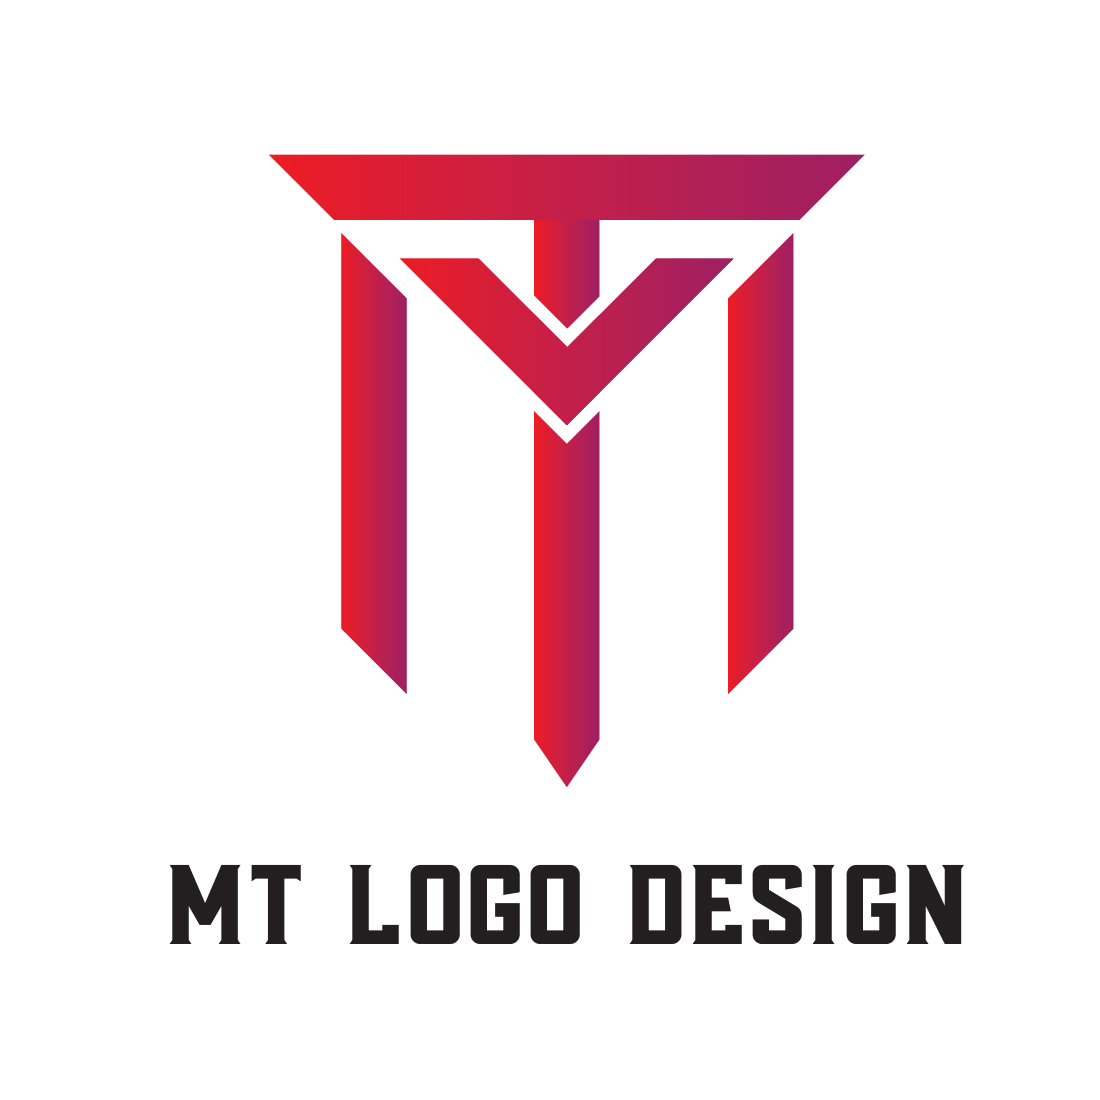 MT Letter Logo Red Design cover image.